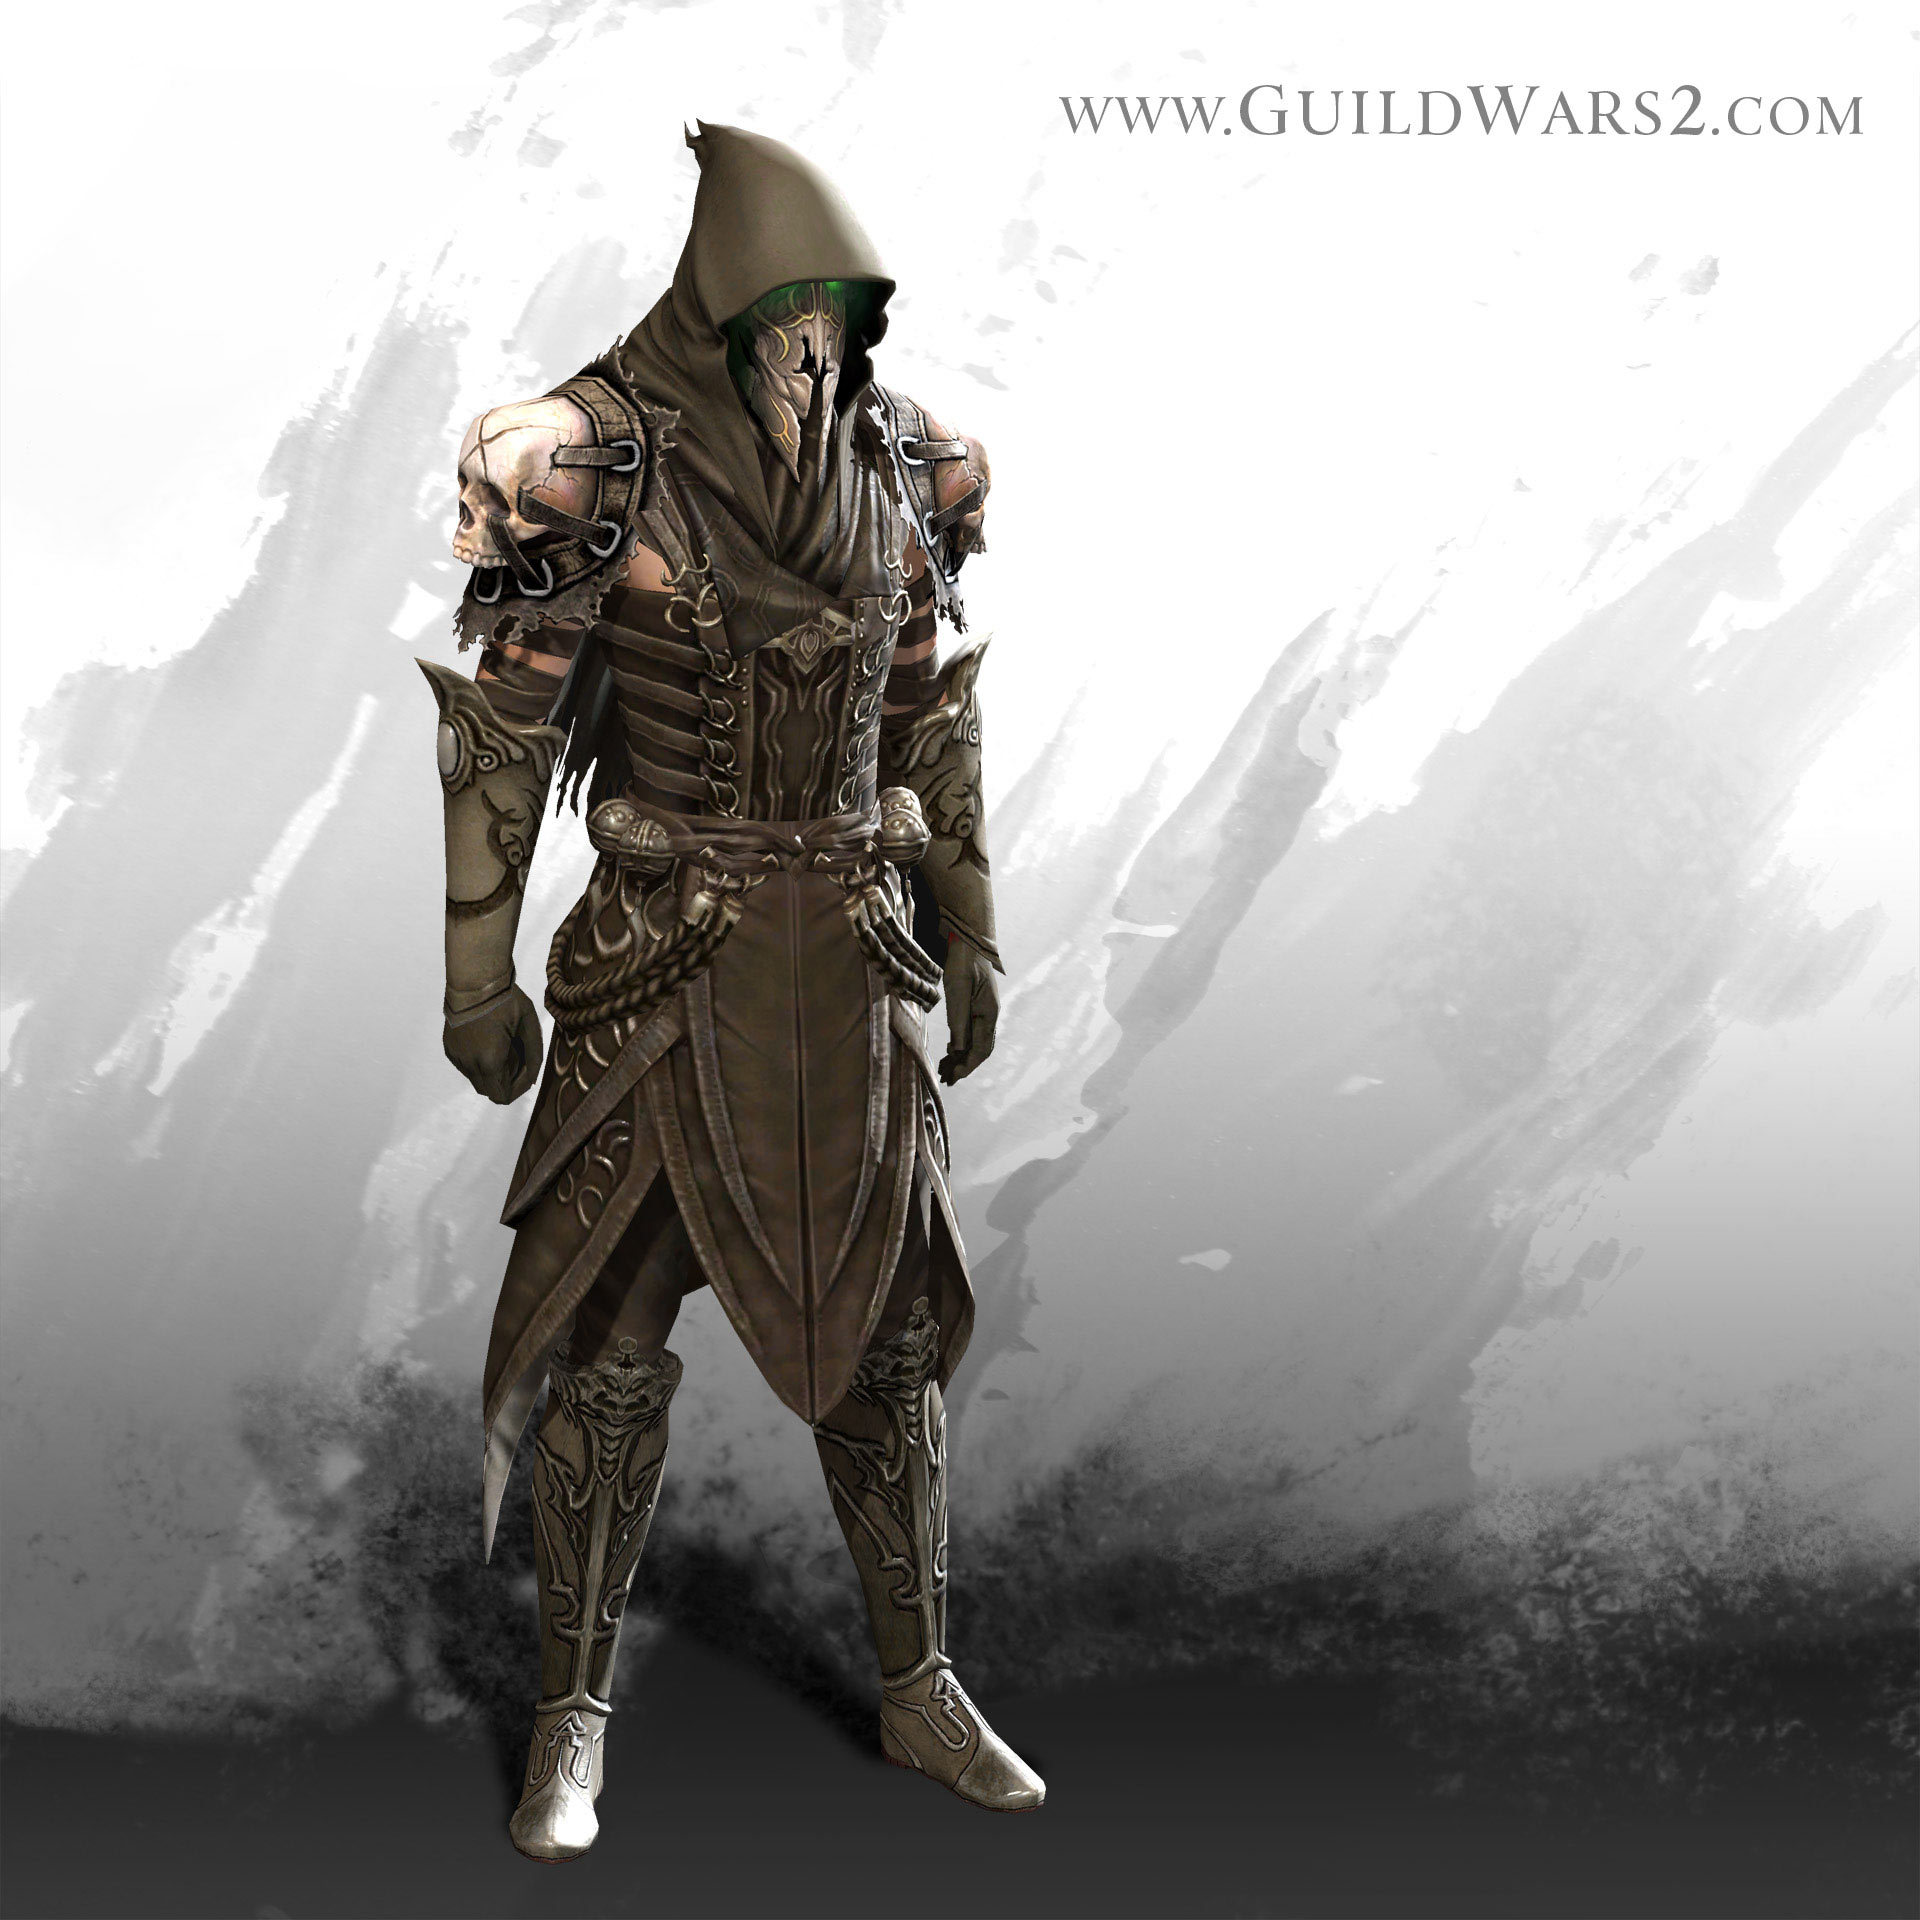 Guild Wars 2 Forum - Guild Wars 2 Discussion